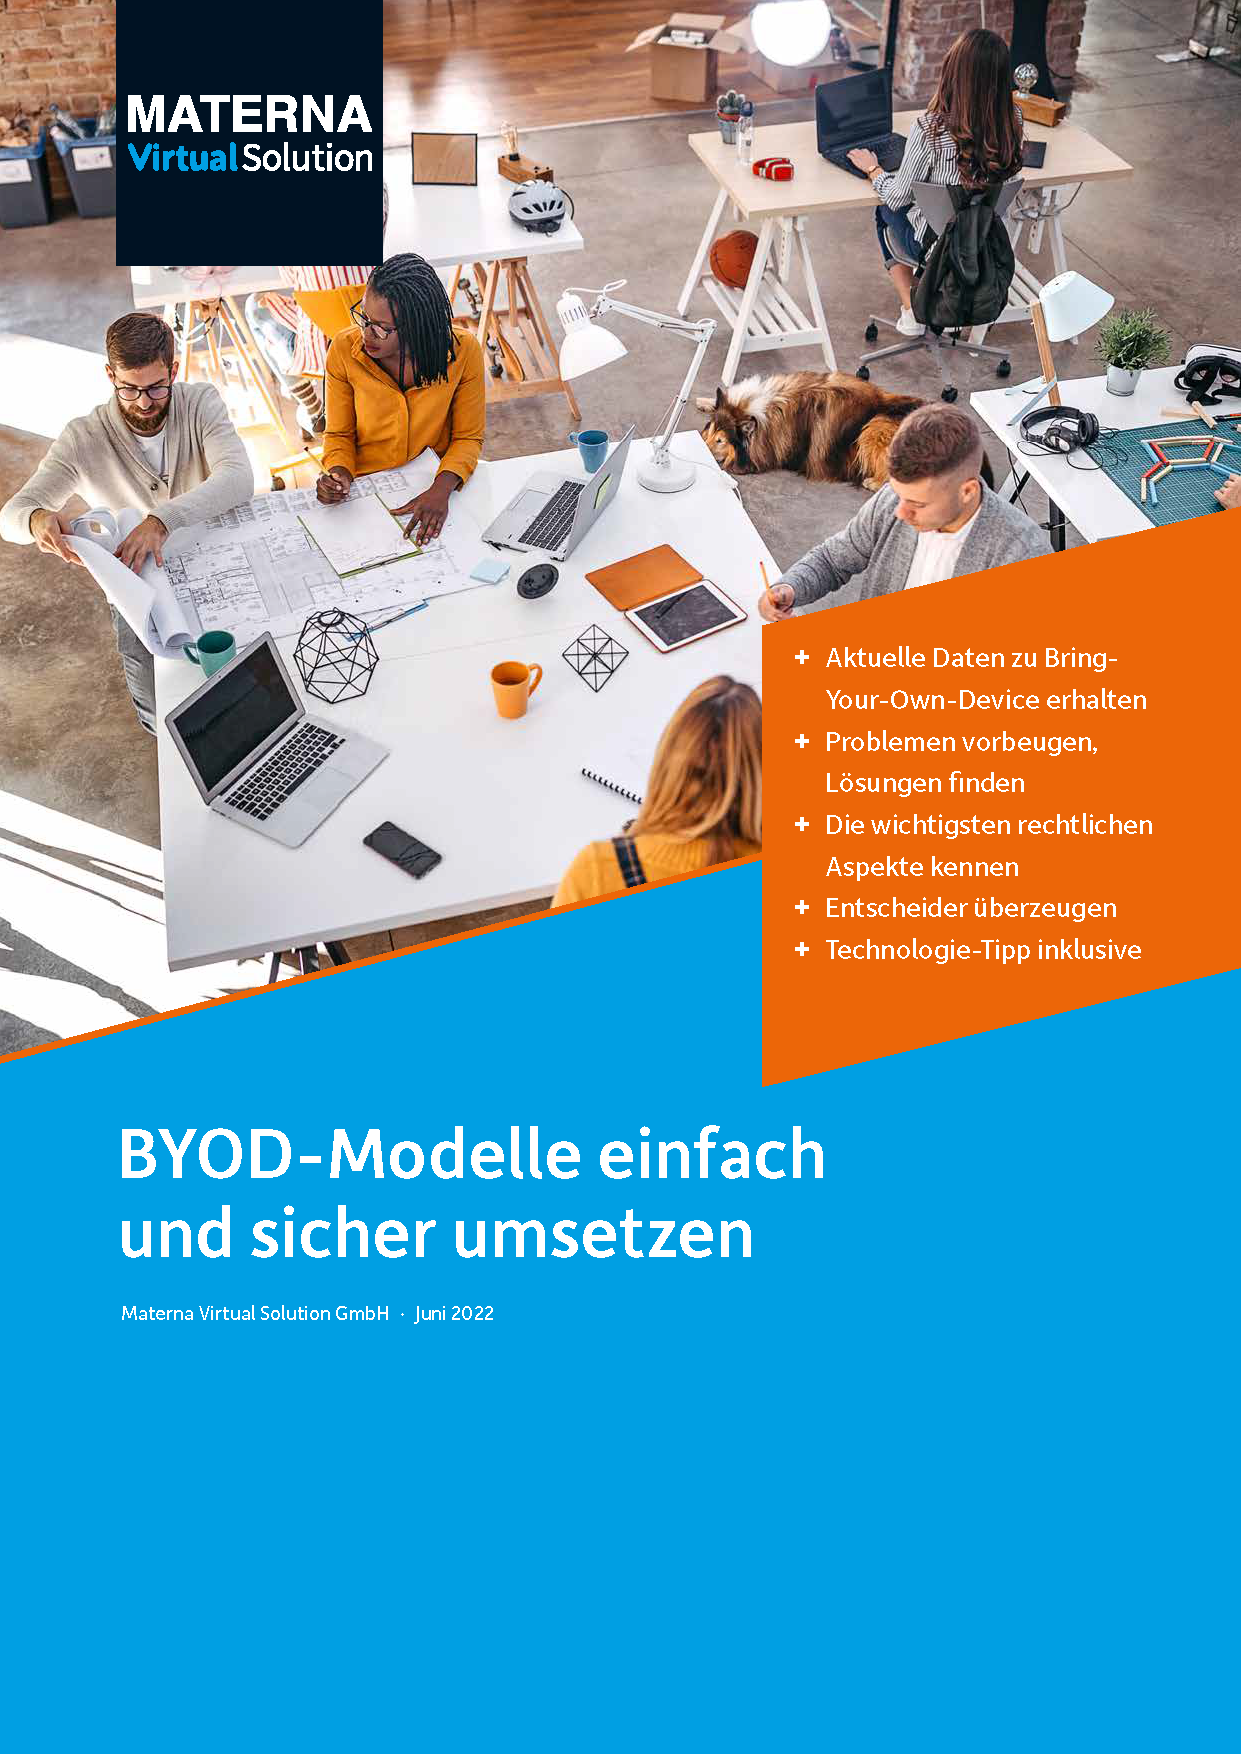 BYOD-Modelle einfach und sicher umsetzen